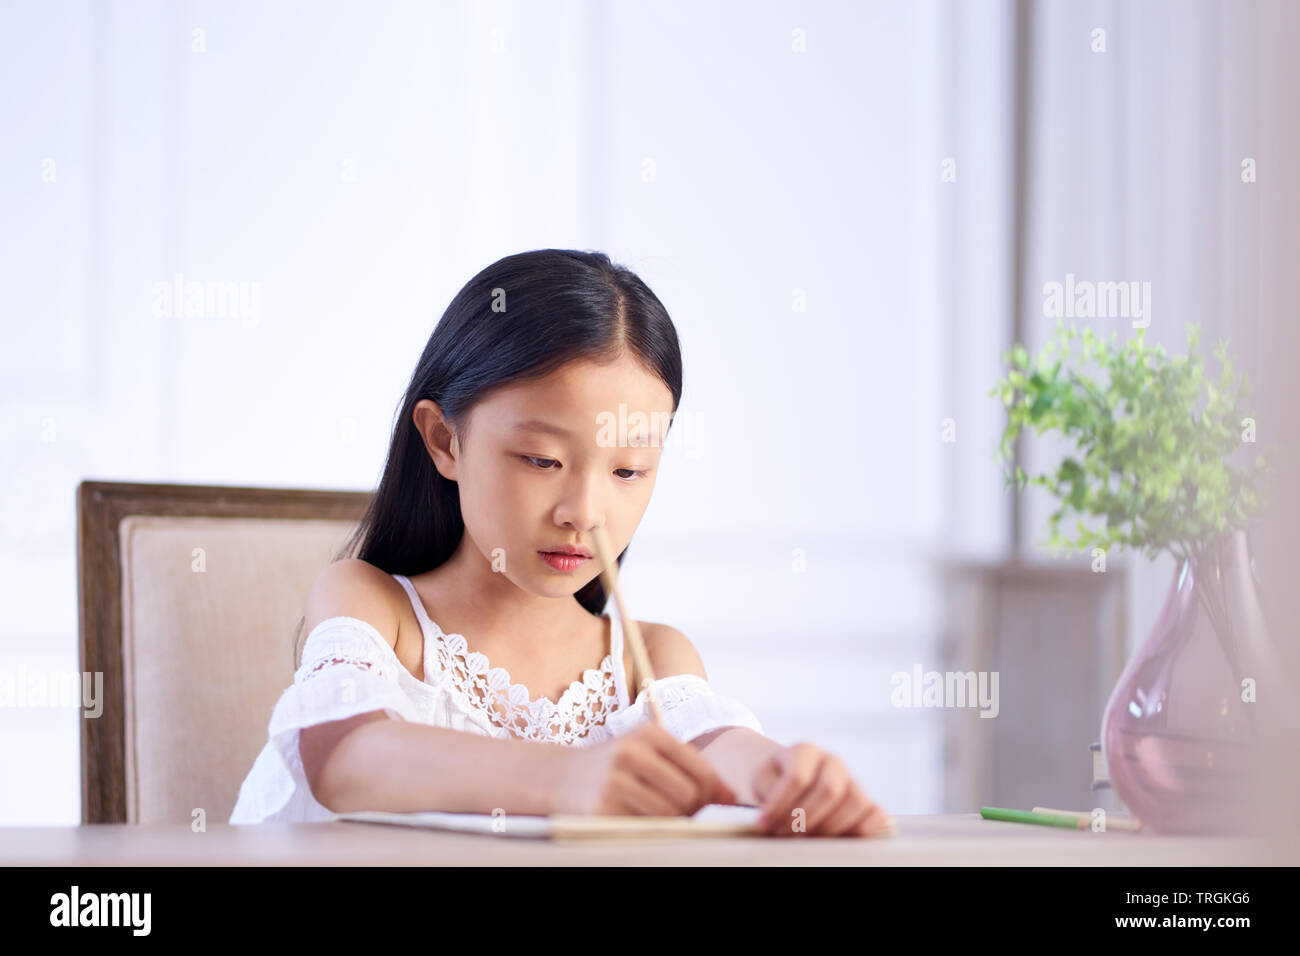 Bonita chica asiática con largo cabello negro sentado en el escritorio en su habitación escribiendo o dibujando sobre note book Foto de stock